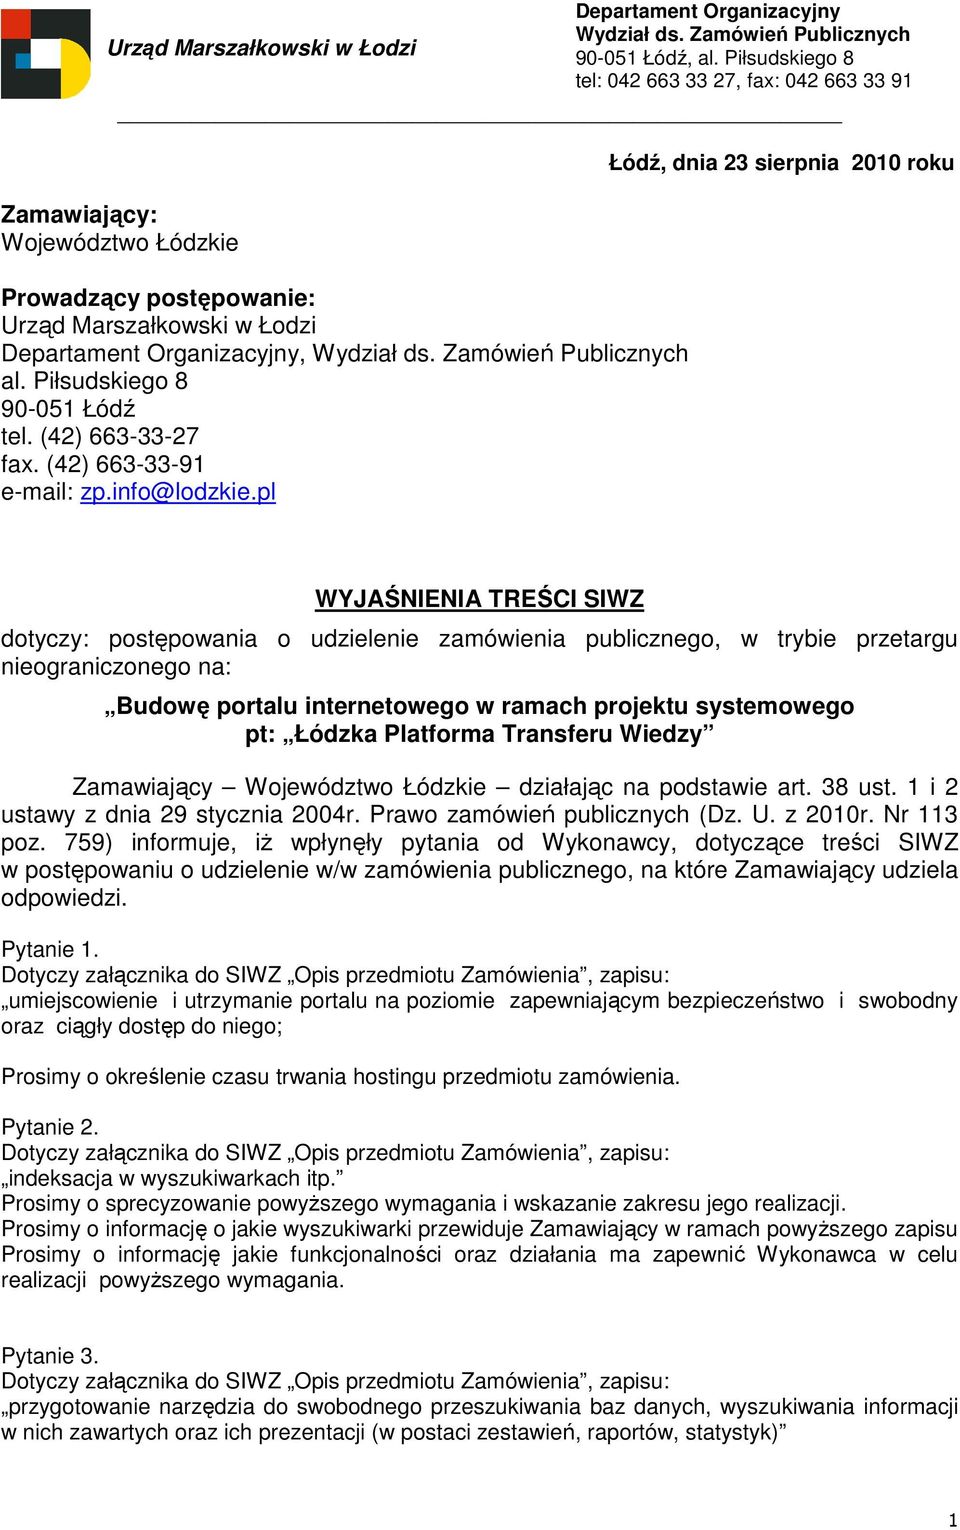 Piłsudskiego 8 tel: 042 663 33 27, fax: 042 663 33 91 Łódź, dnia 23 sierpnia 2010 roku WYJAŚNIENIA TREŚCI SIWZ dotyczy: postępowania o udzielenie zamówienia publicznego, w trybie przetargu